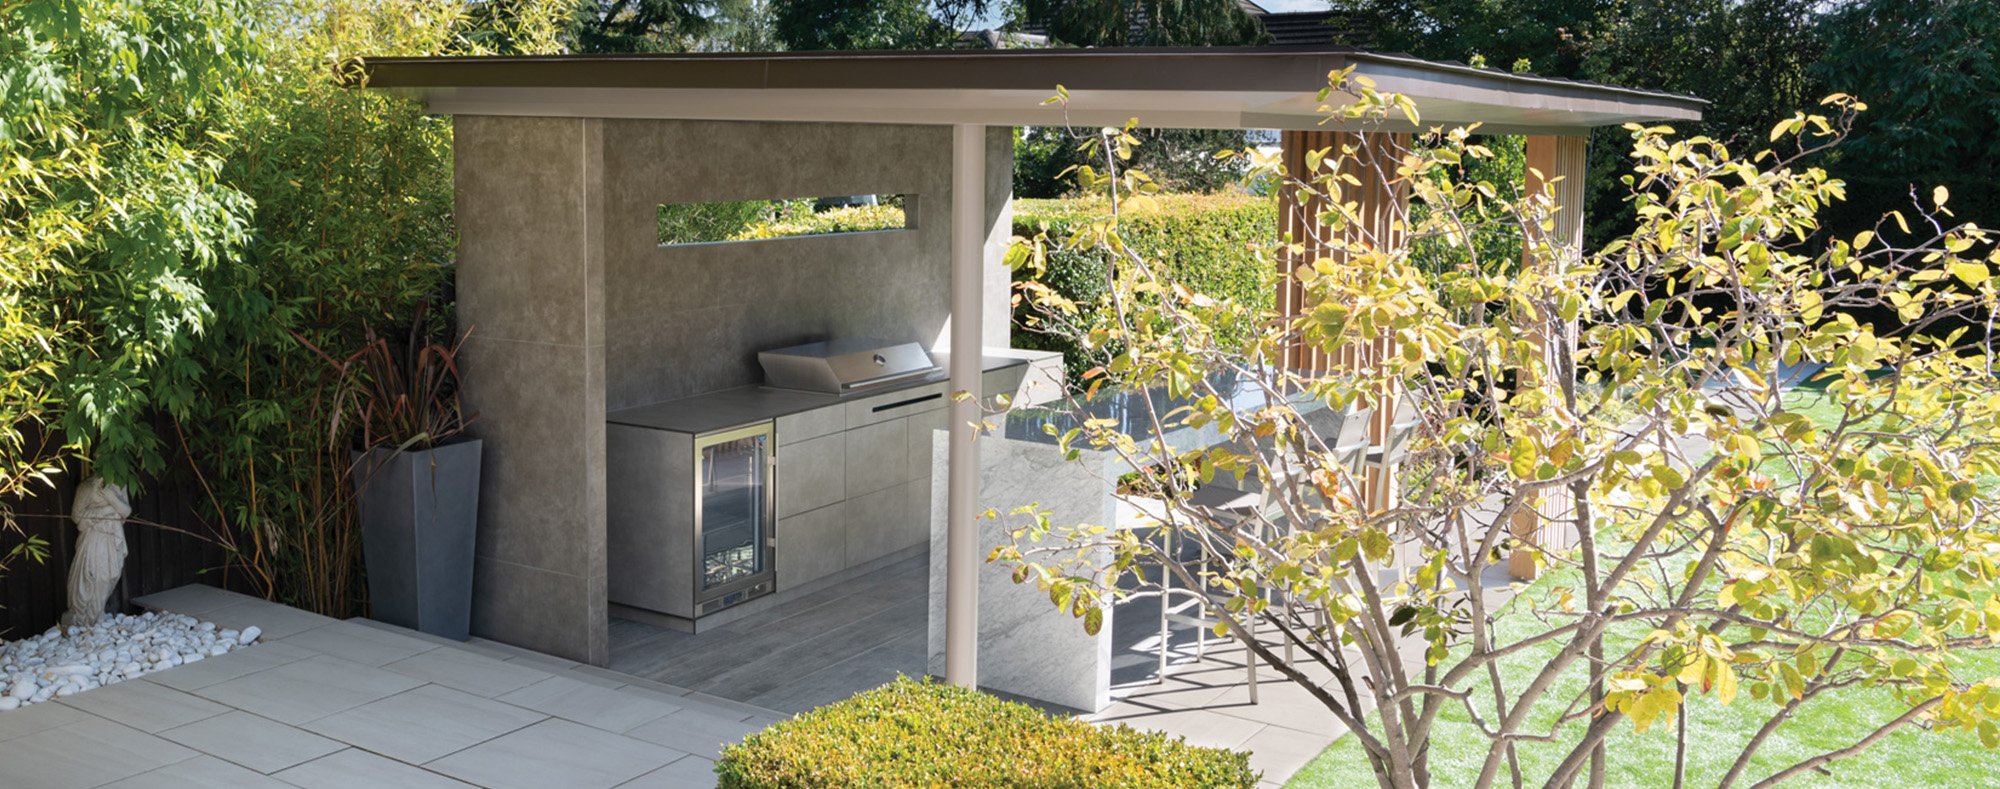 Luxury concrete outdoor kitchen